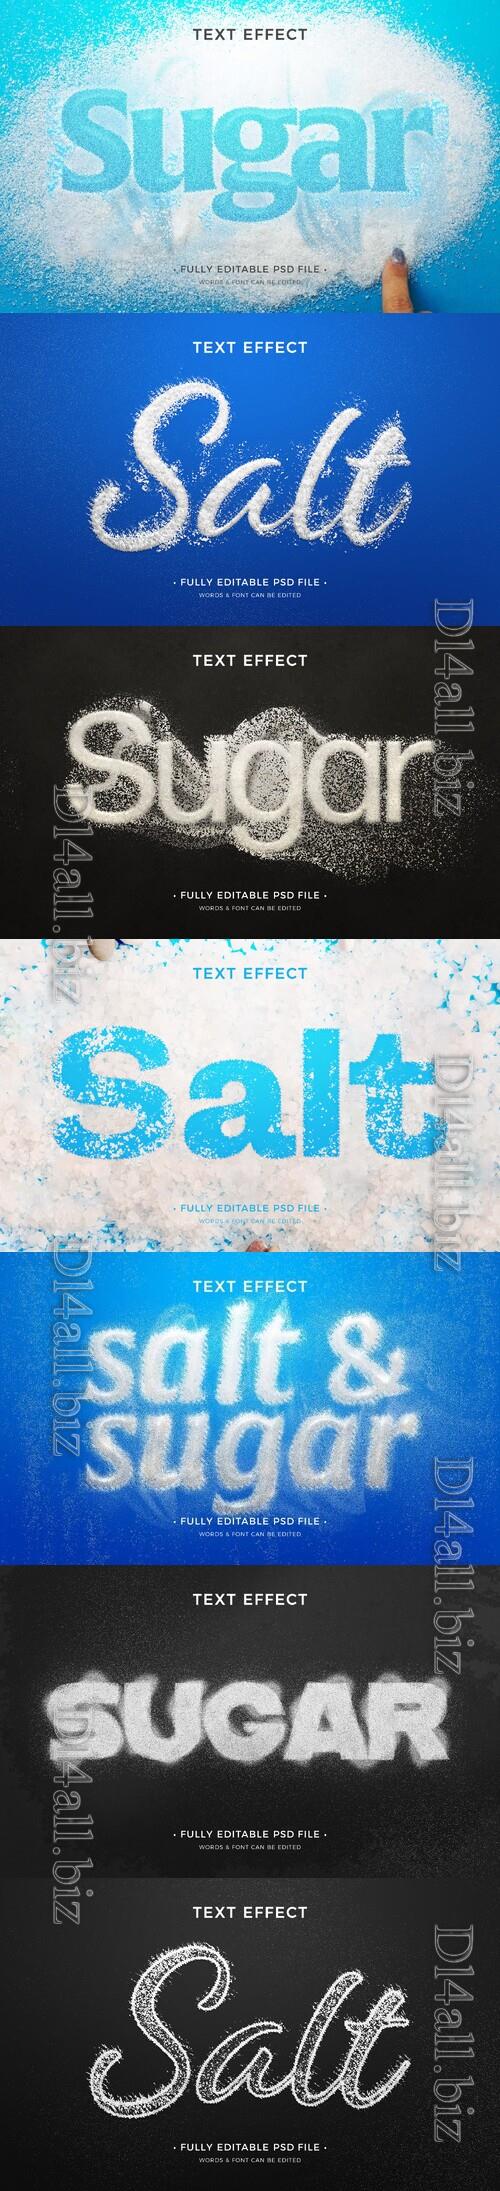 PSD sugar and salt text effect